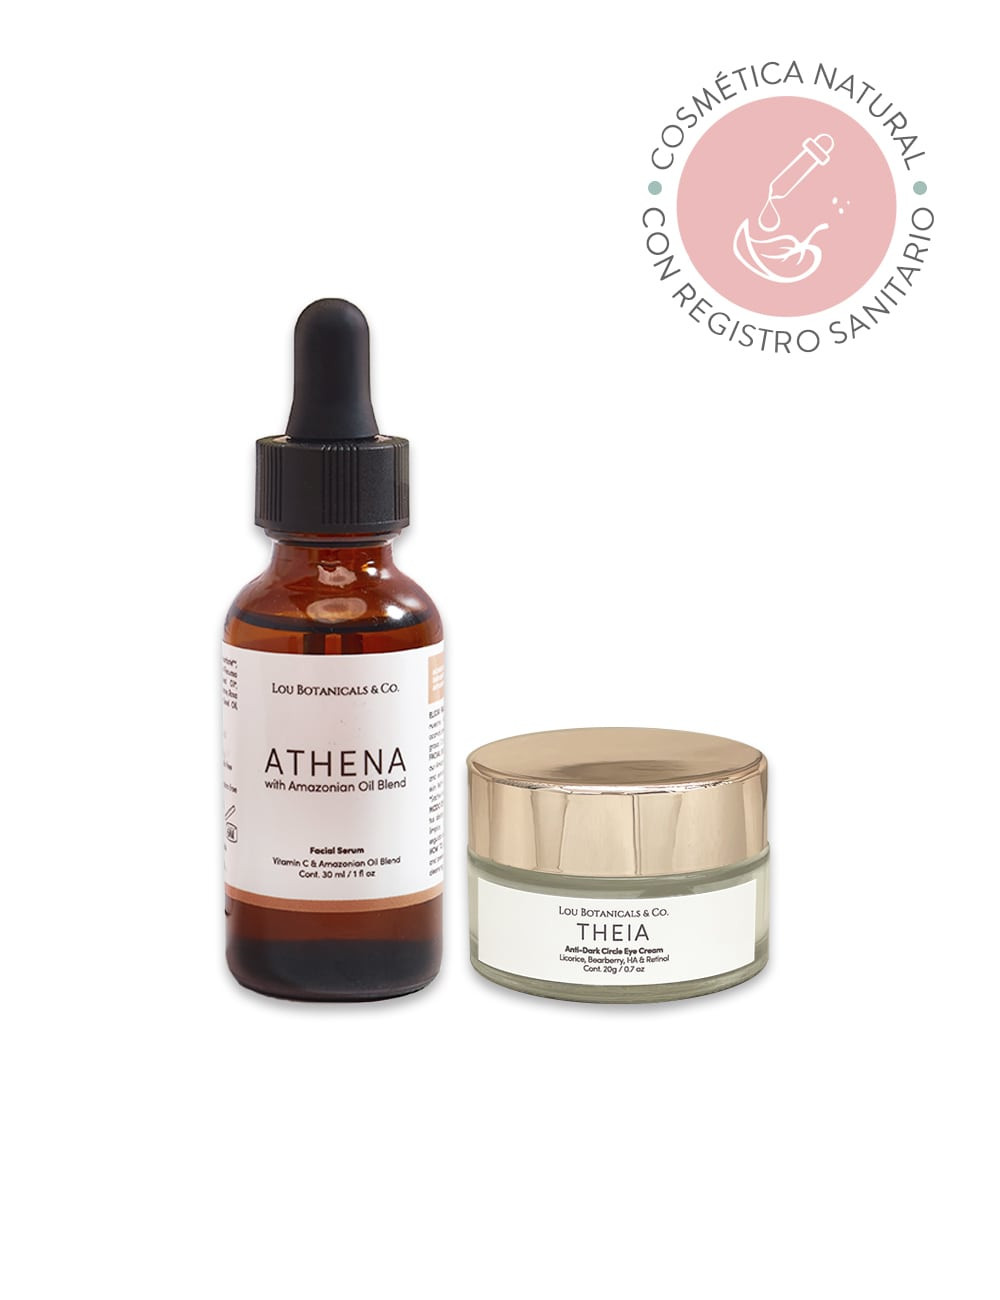 Pack serum facial antioxidante de vitamina C Athena y contorno de ojos natural y organico Theia con acido hialuronico y retinol